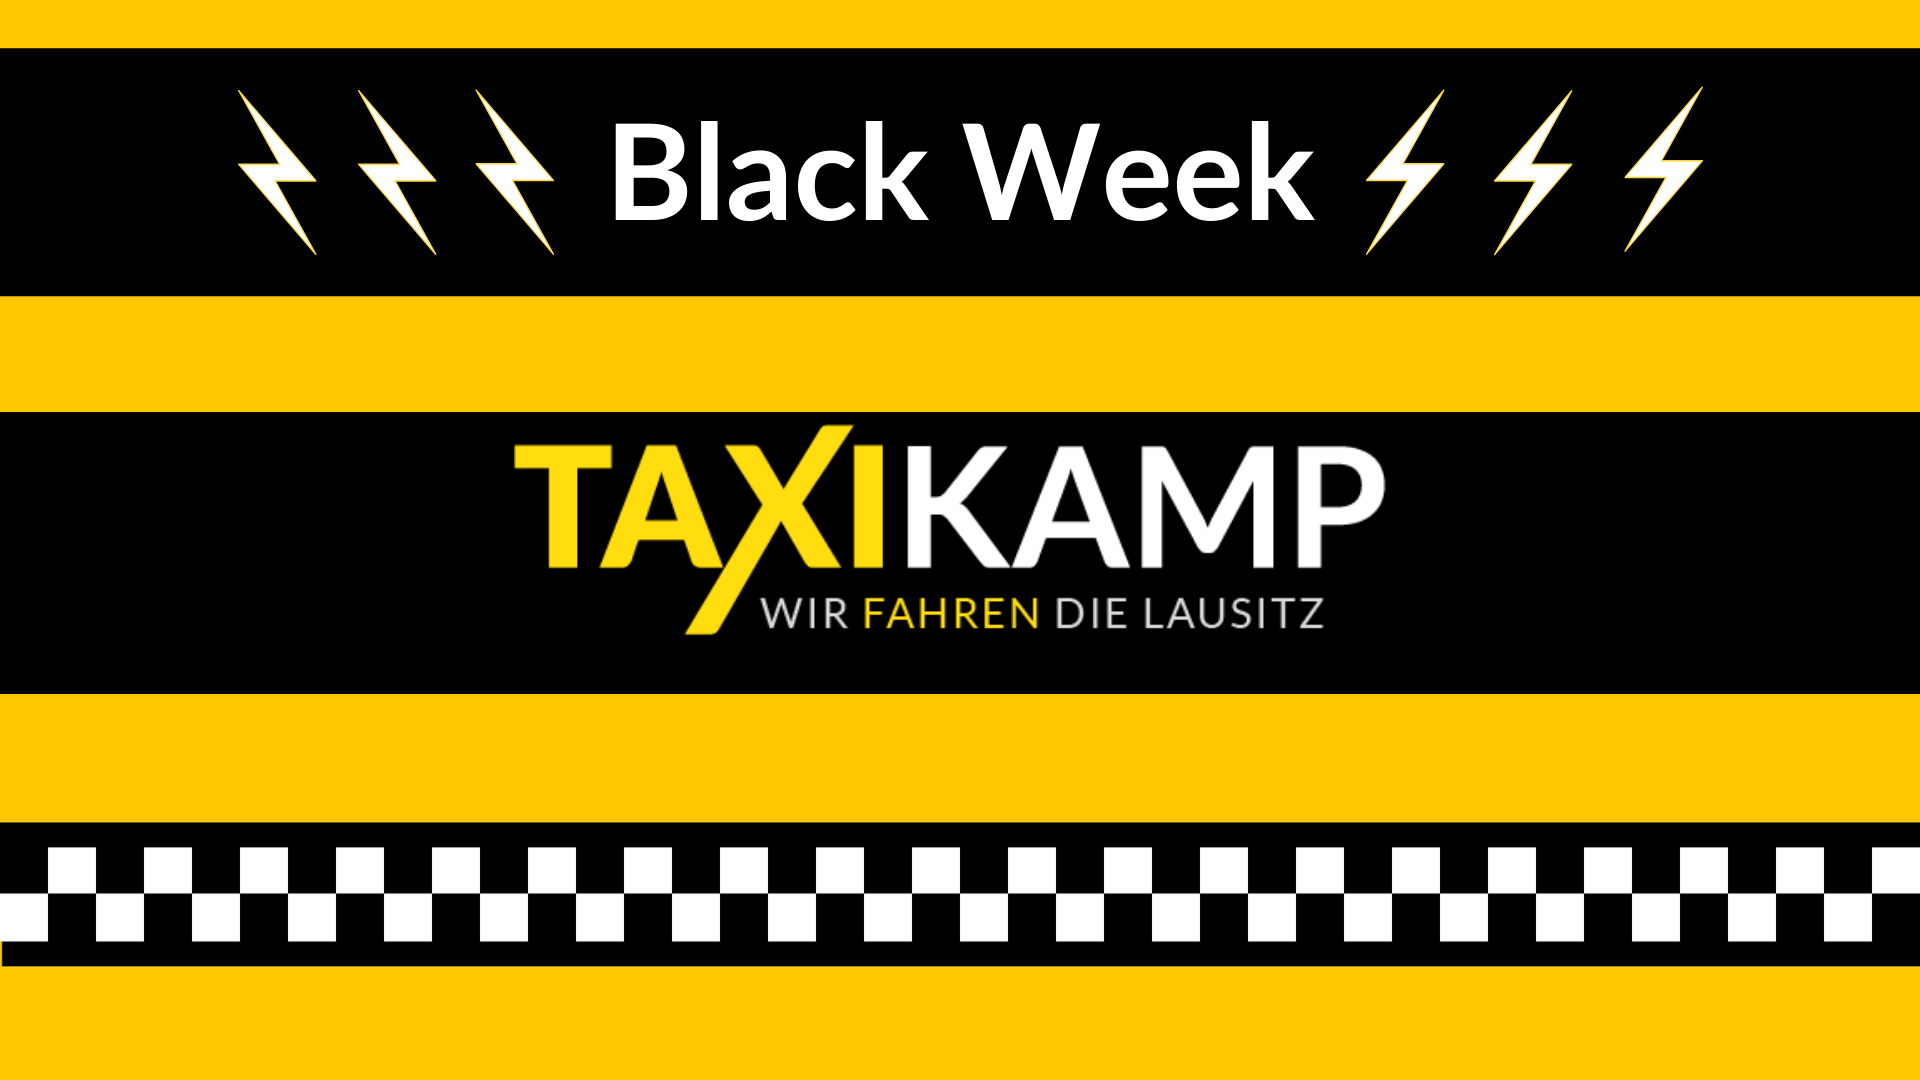 Taxikamp - Black Friday Shopping Woche und Taxikamp fährt Sie